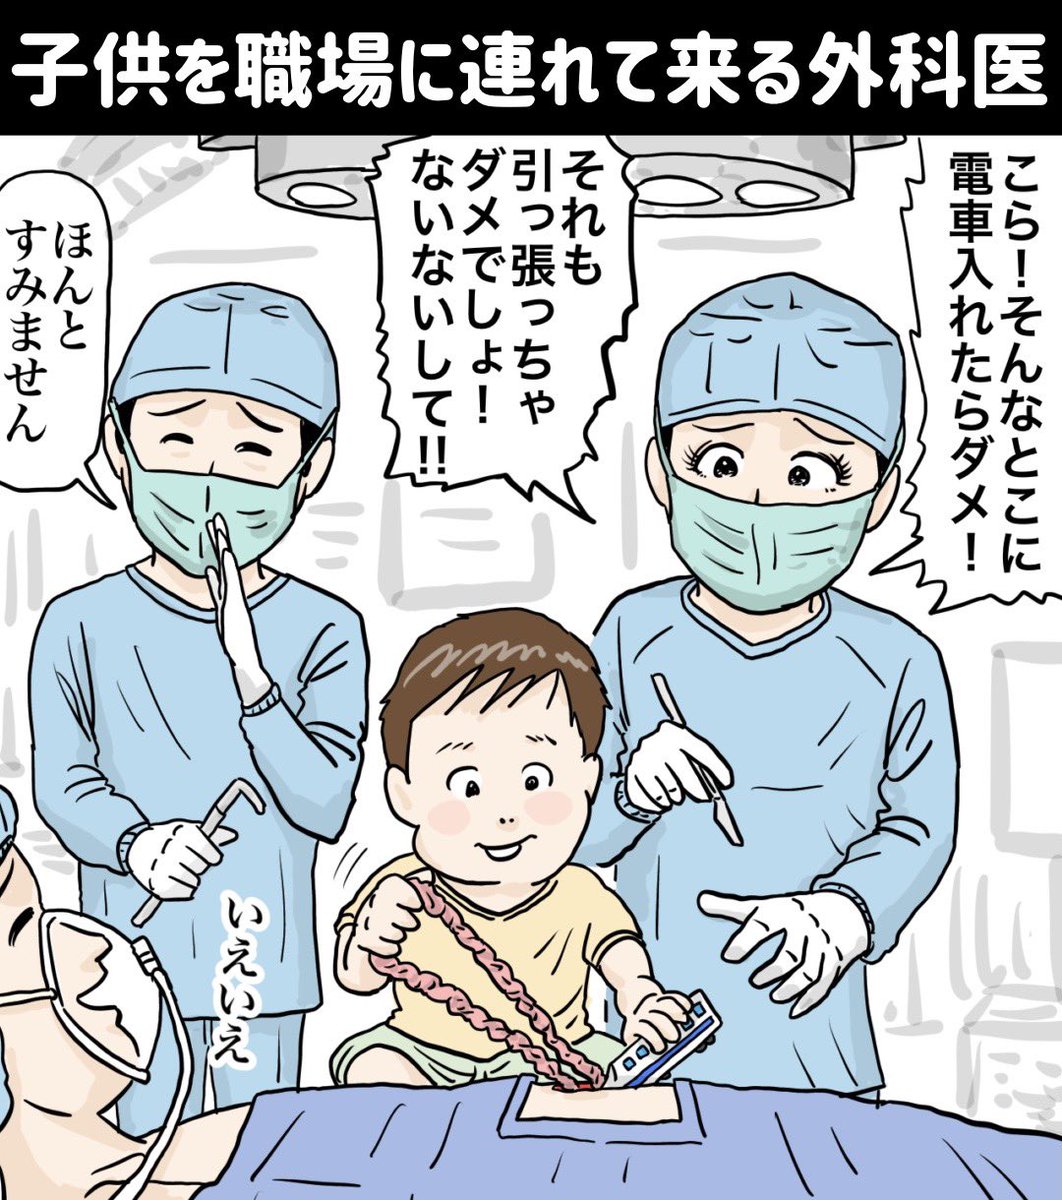 『子供を職場に連れて来る外科医』

https://t.co/YgVCM8h9vf
#イラスト #漫画 #manga #お絵描き #drawing #illustration #アニメ #anime #子育て #子供 